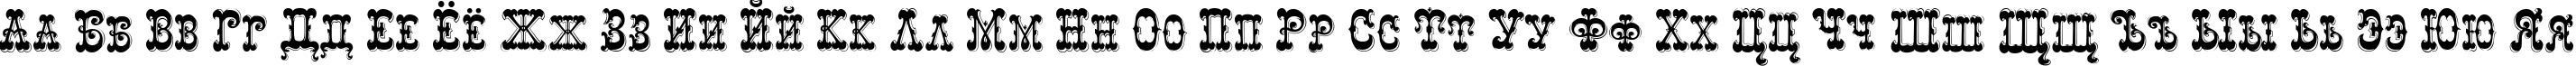 Пример написания русского алфавита шрифтом Rochester